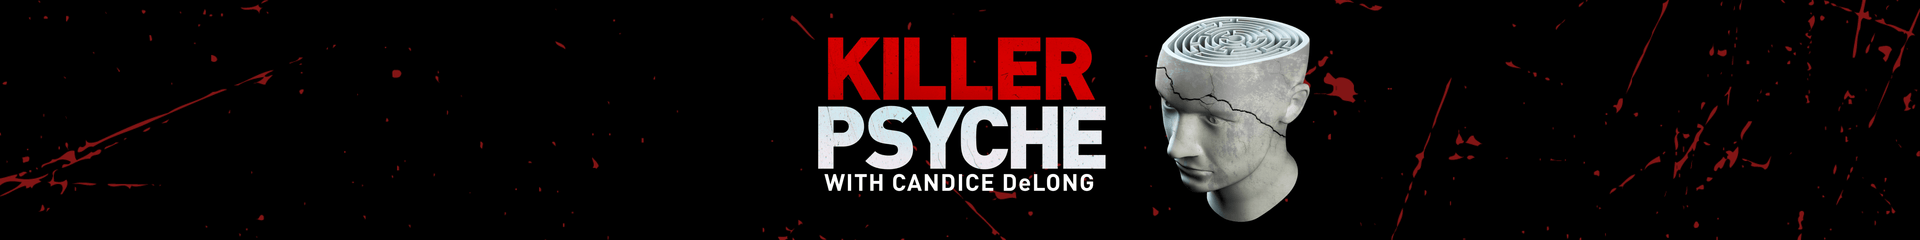 killer psyche-image